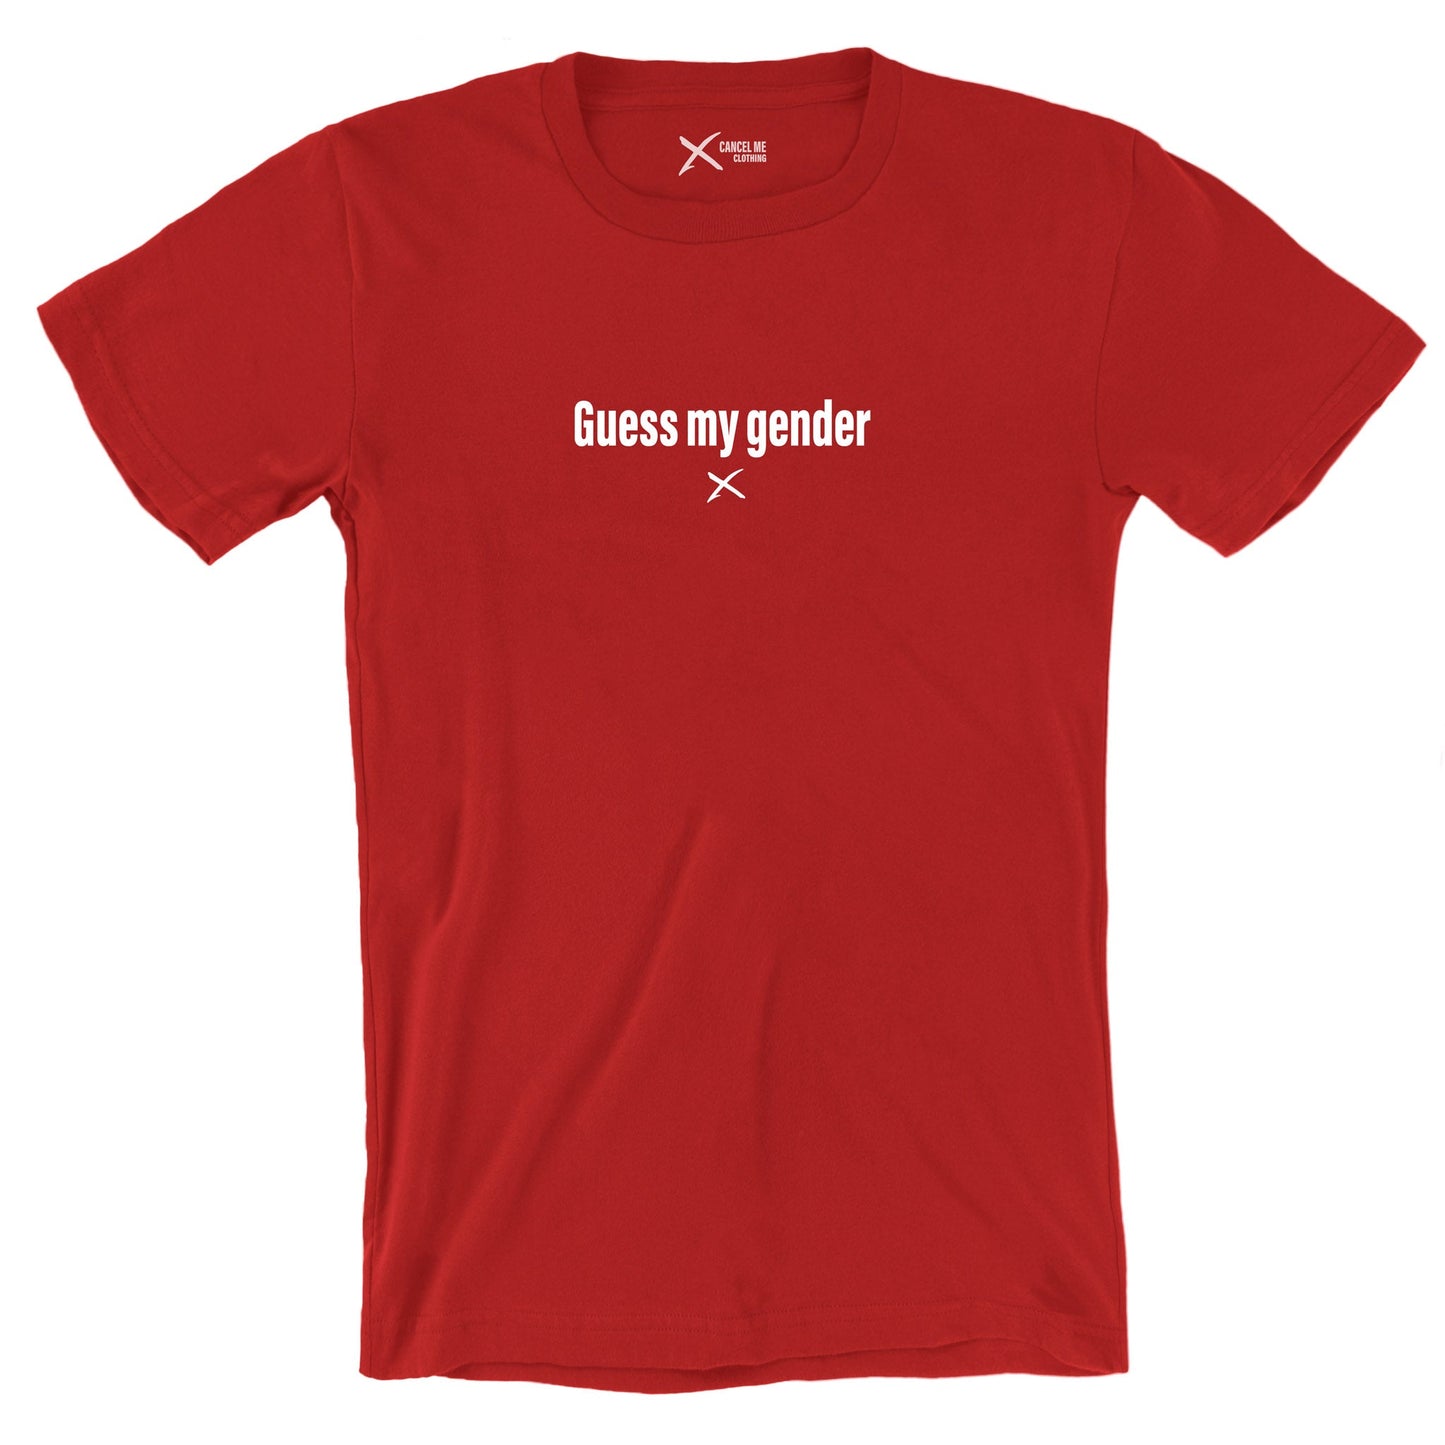 Guess my gender - Shirt